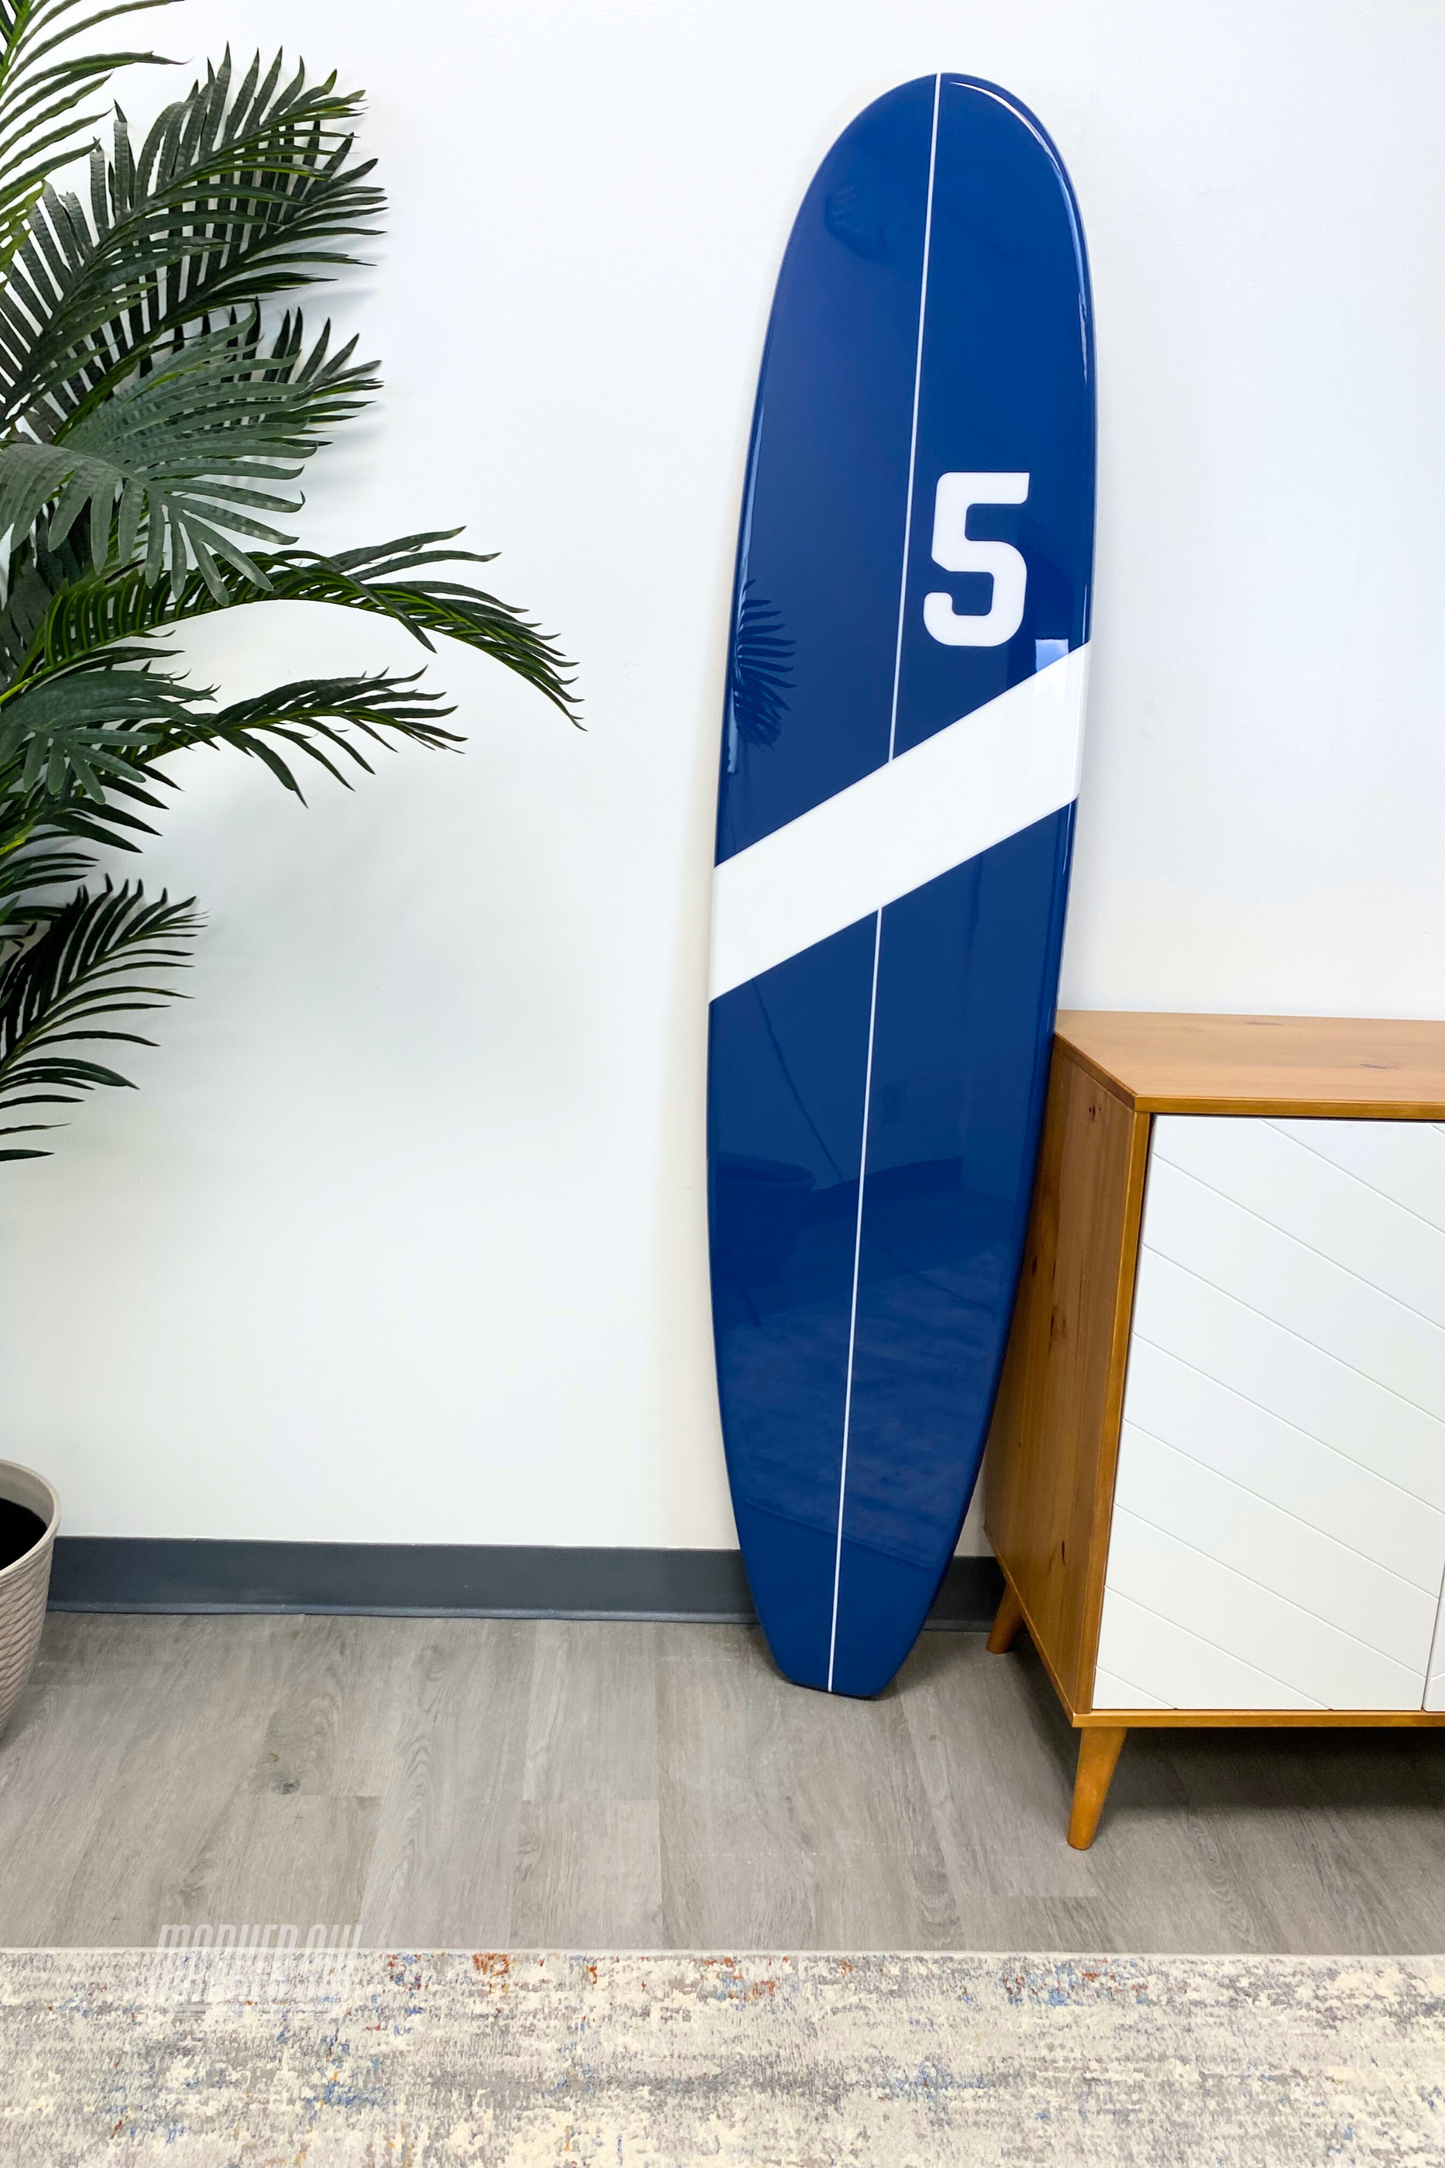 The Catamaran Wooden Surfboard Wall Decor Art